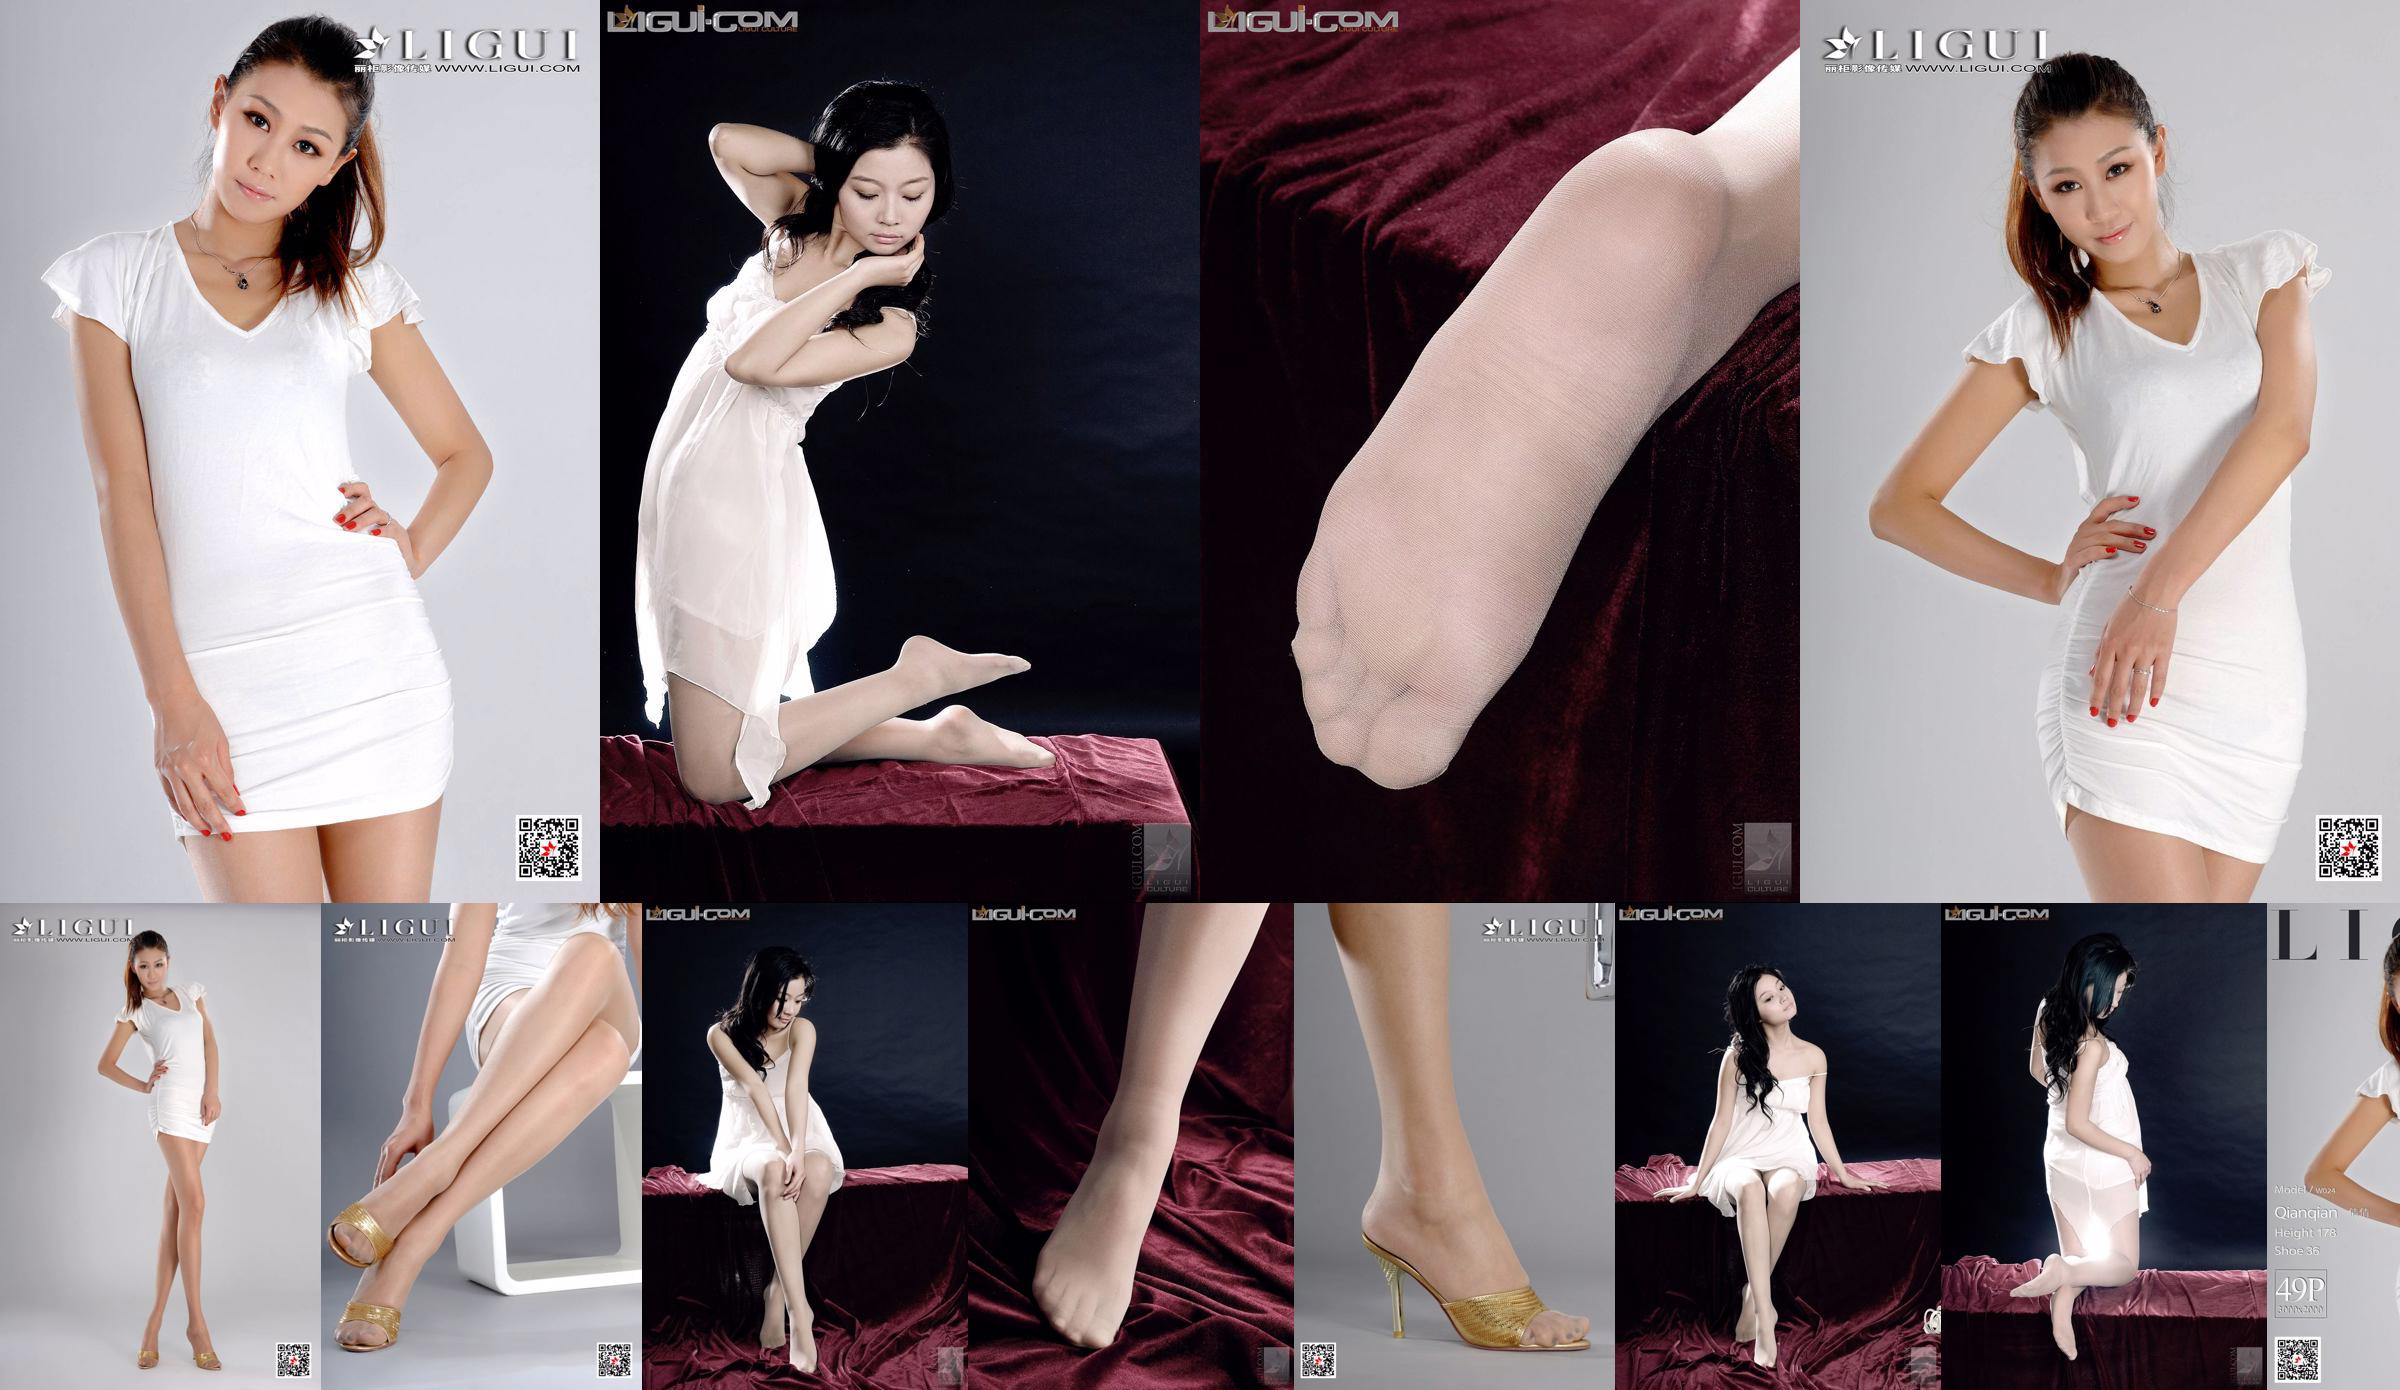 Người mẫu Qianqian "Cô gái cao với chân dài" [LIGUI] Người đẹp mạng No.1238ce Trang 2